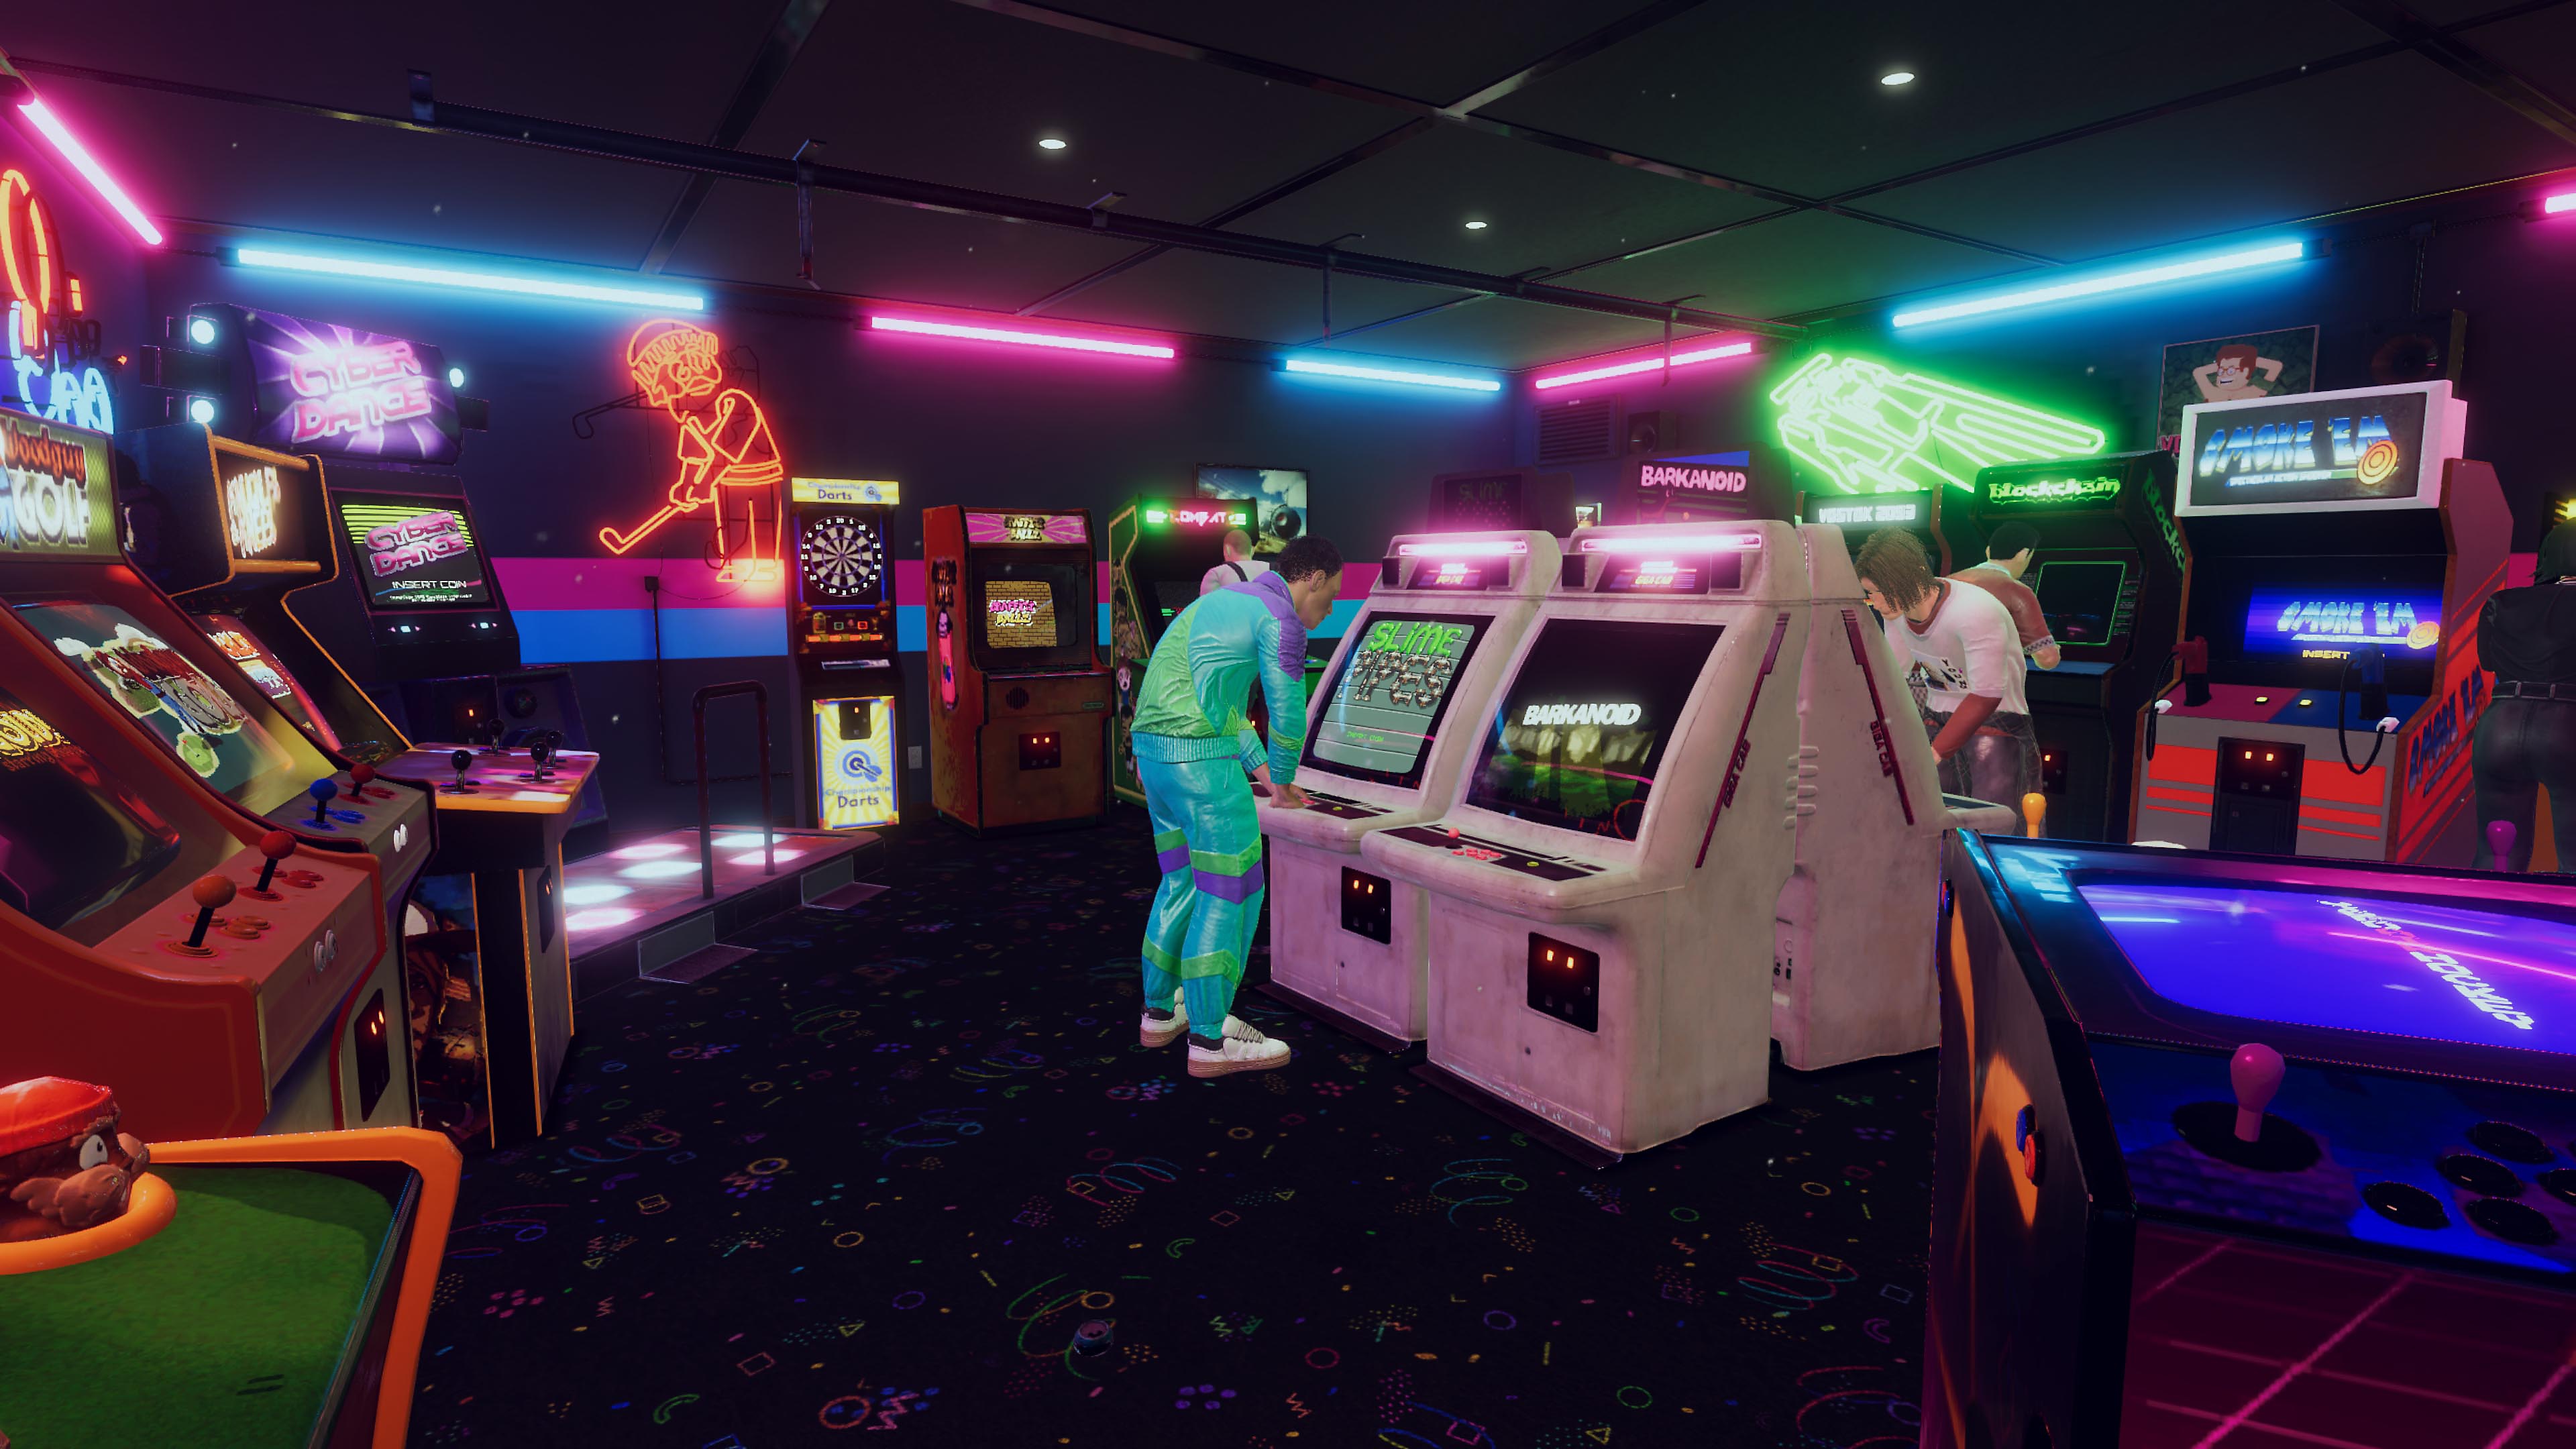 Capture d'écran d'Arcade Paradise montrant une arcade rétro style années 90 avec des néons bleus et roses